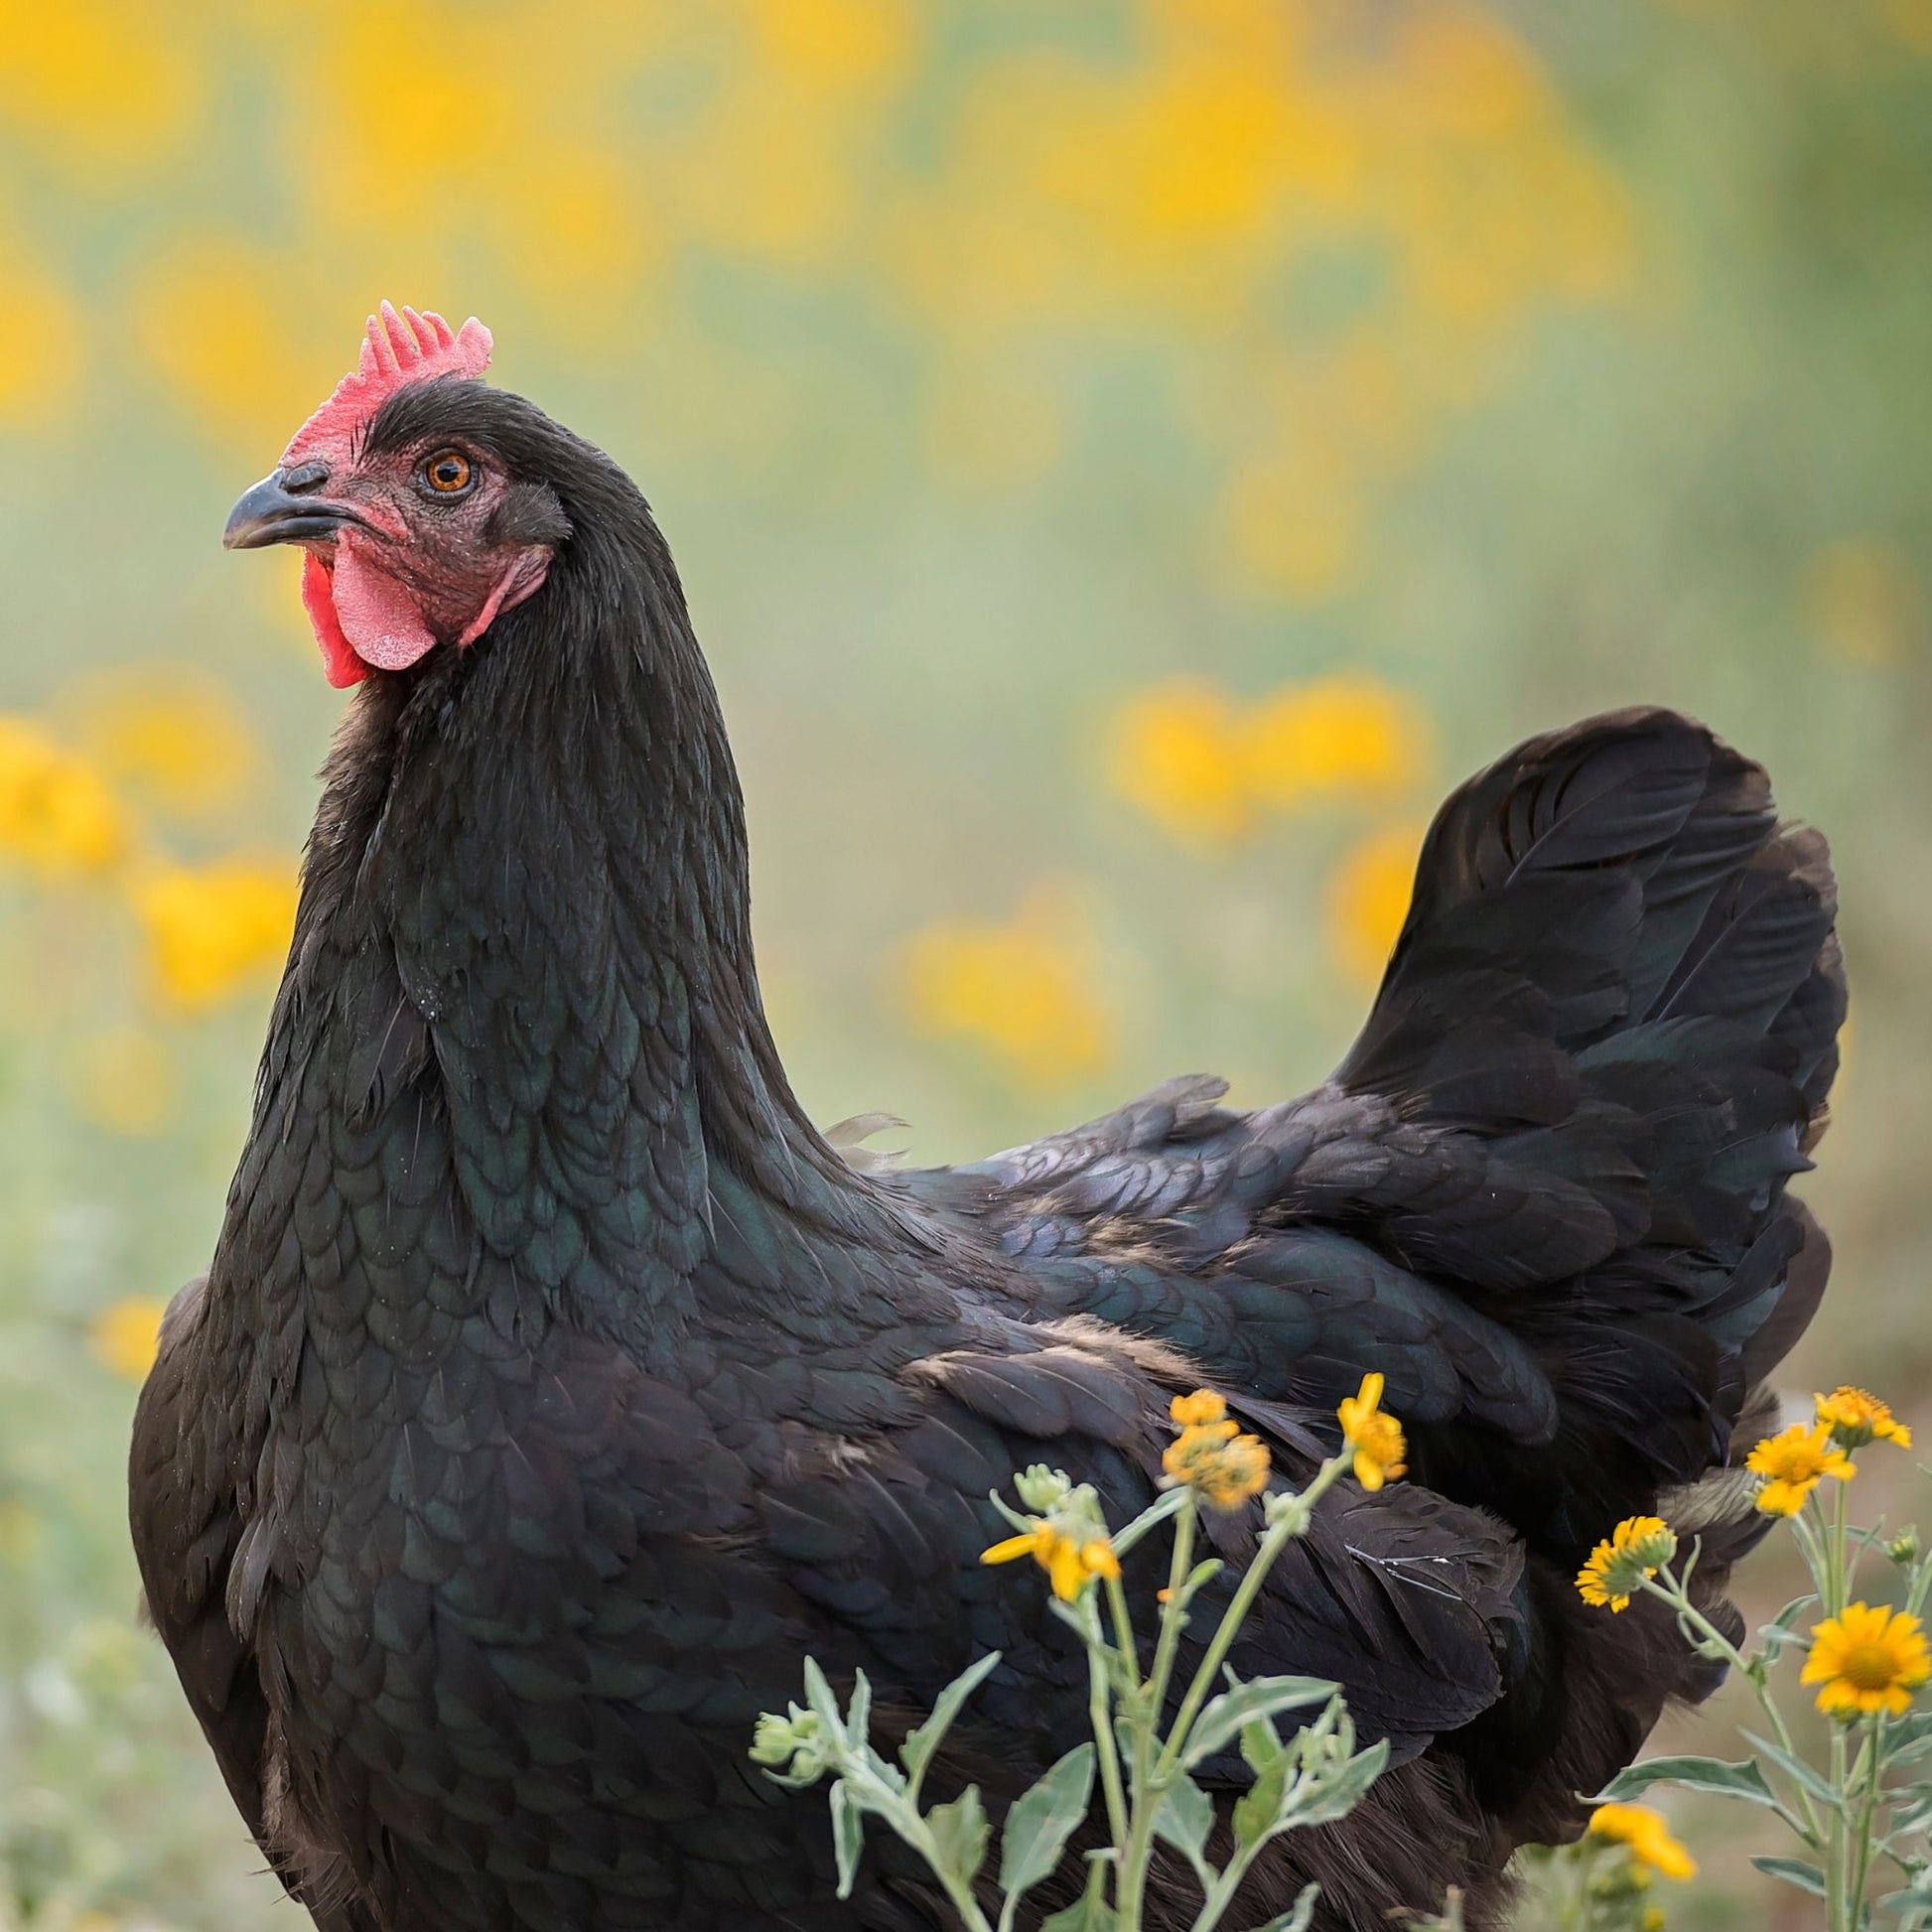 Black Australorp chicken